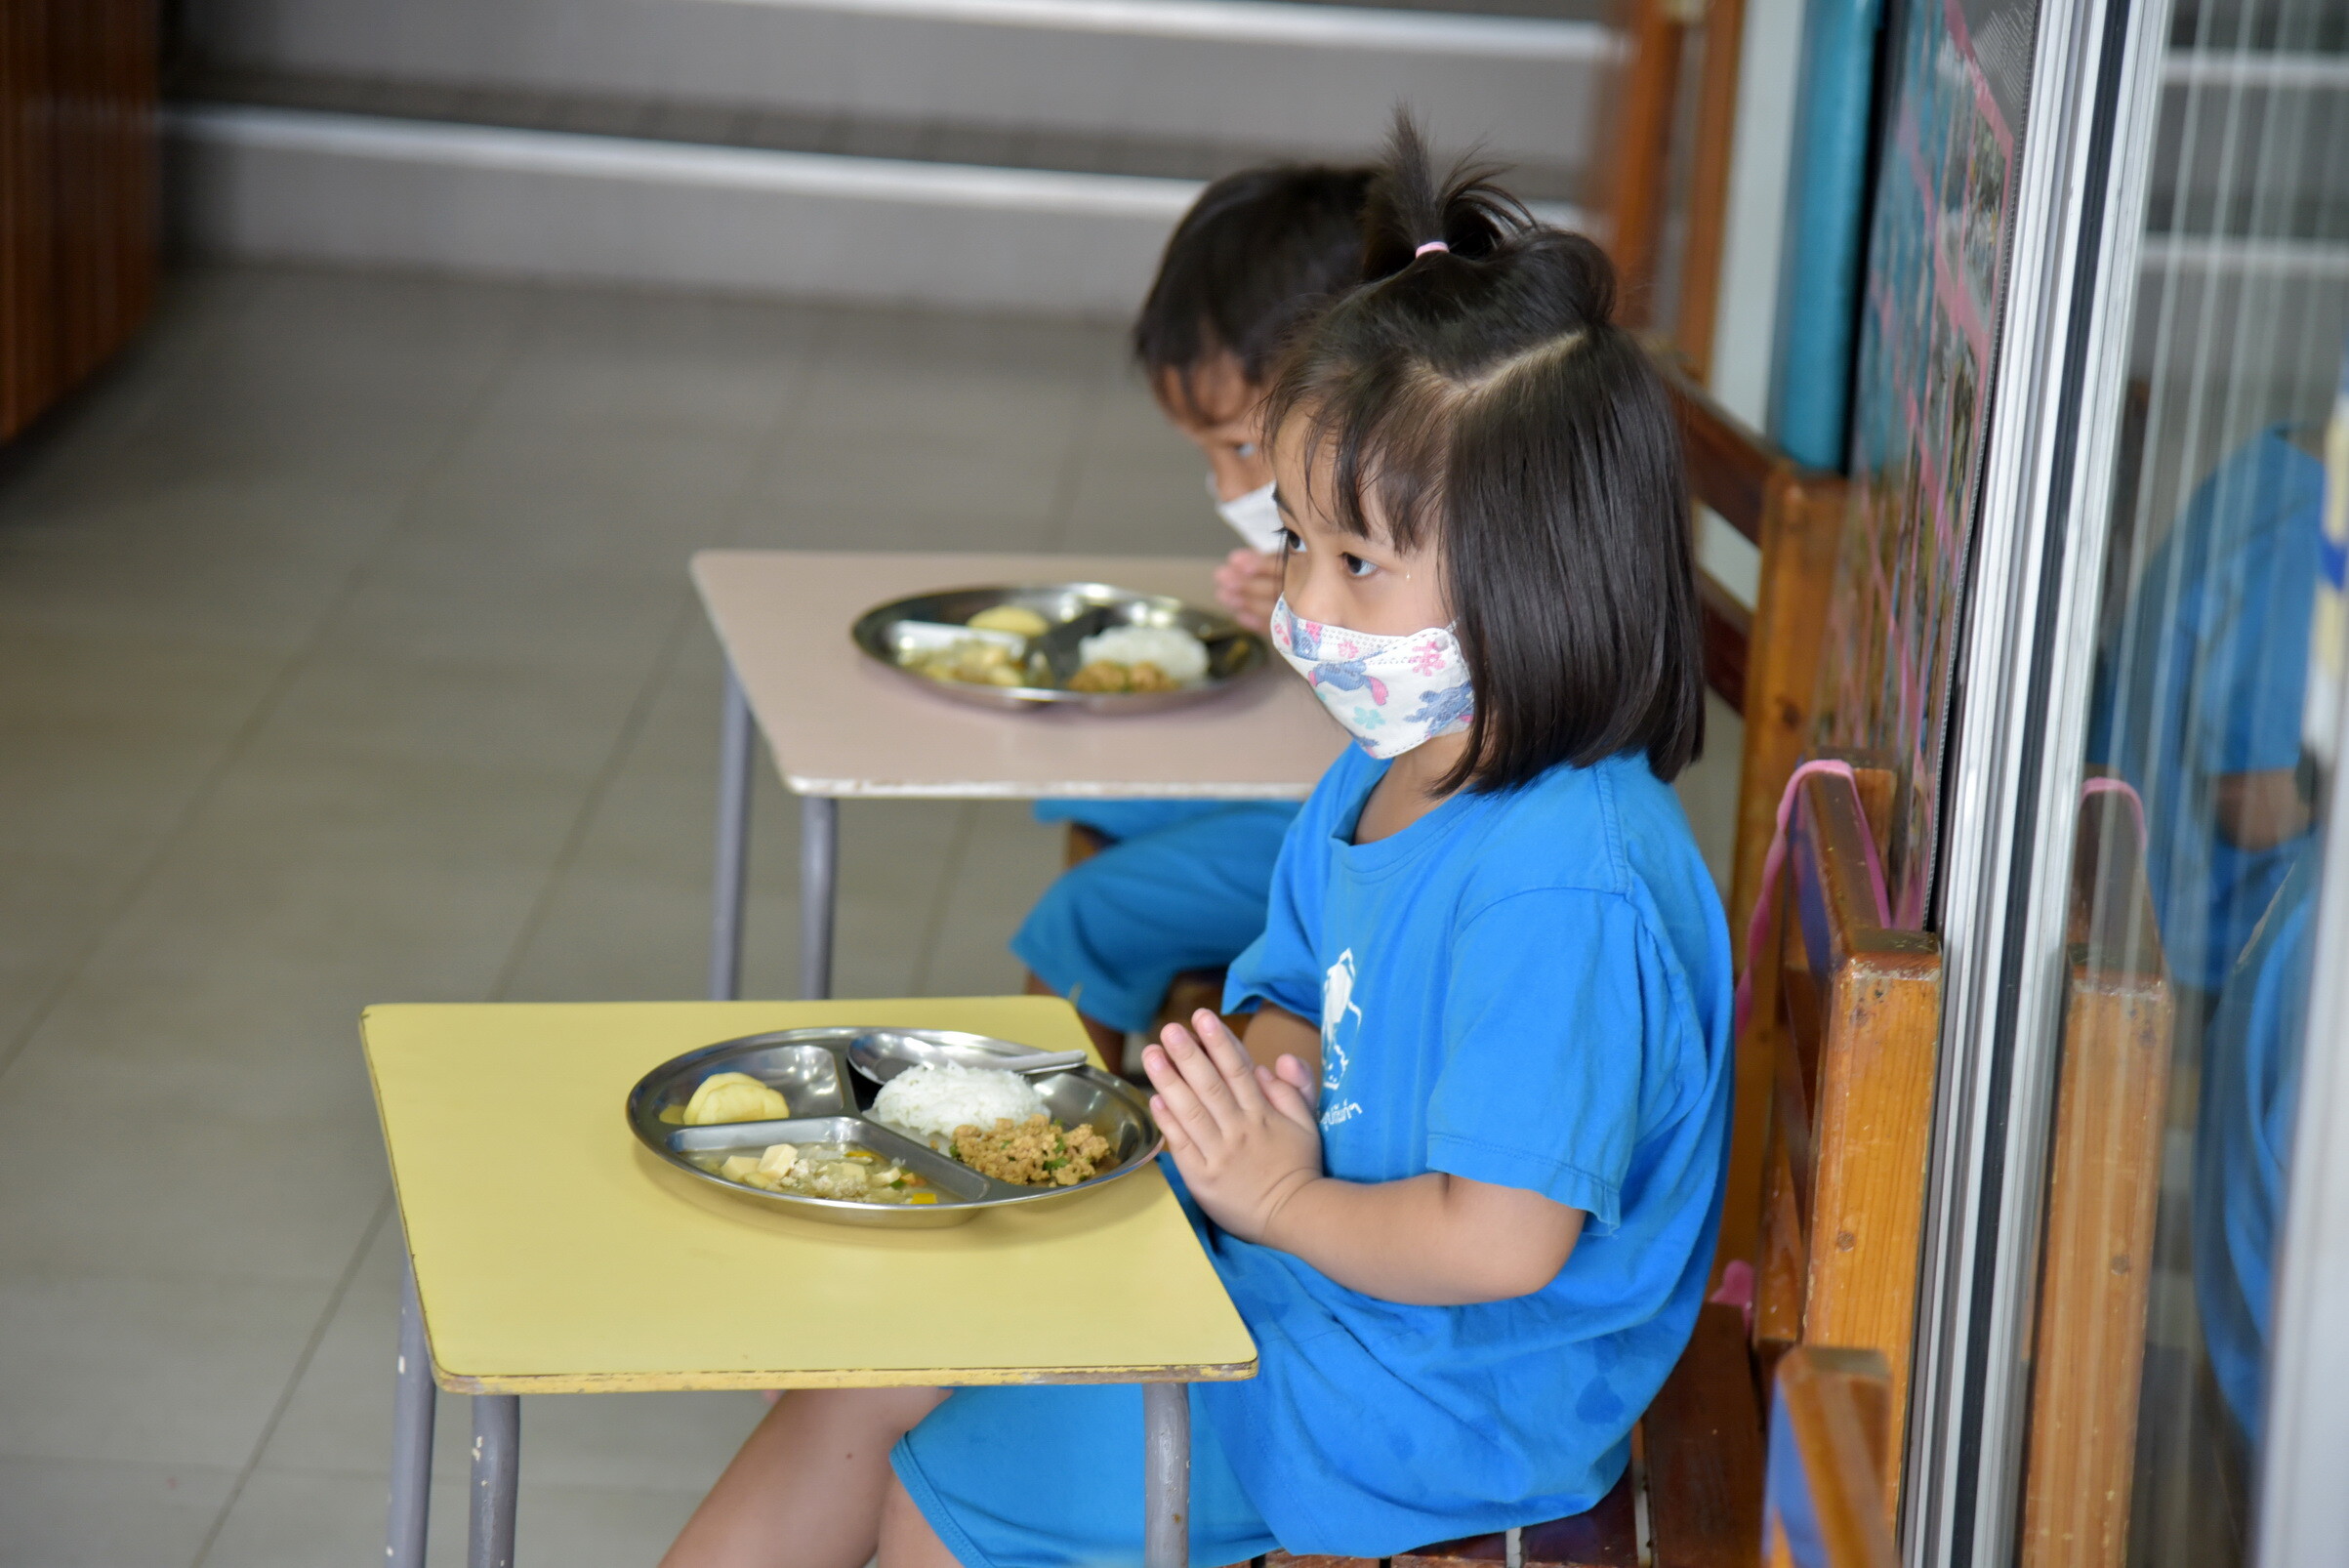 ชลิต อินดัสทรีฯ เติมน้ำใจให้น้องมูลนิธิเด็กอ่อนในสลัม ร่วมสมทบทุนการศึกษา -อาหารกลางวันเพื่อคุณภาพชีวิตที่ดี